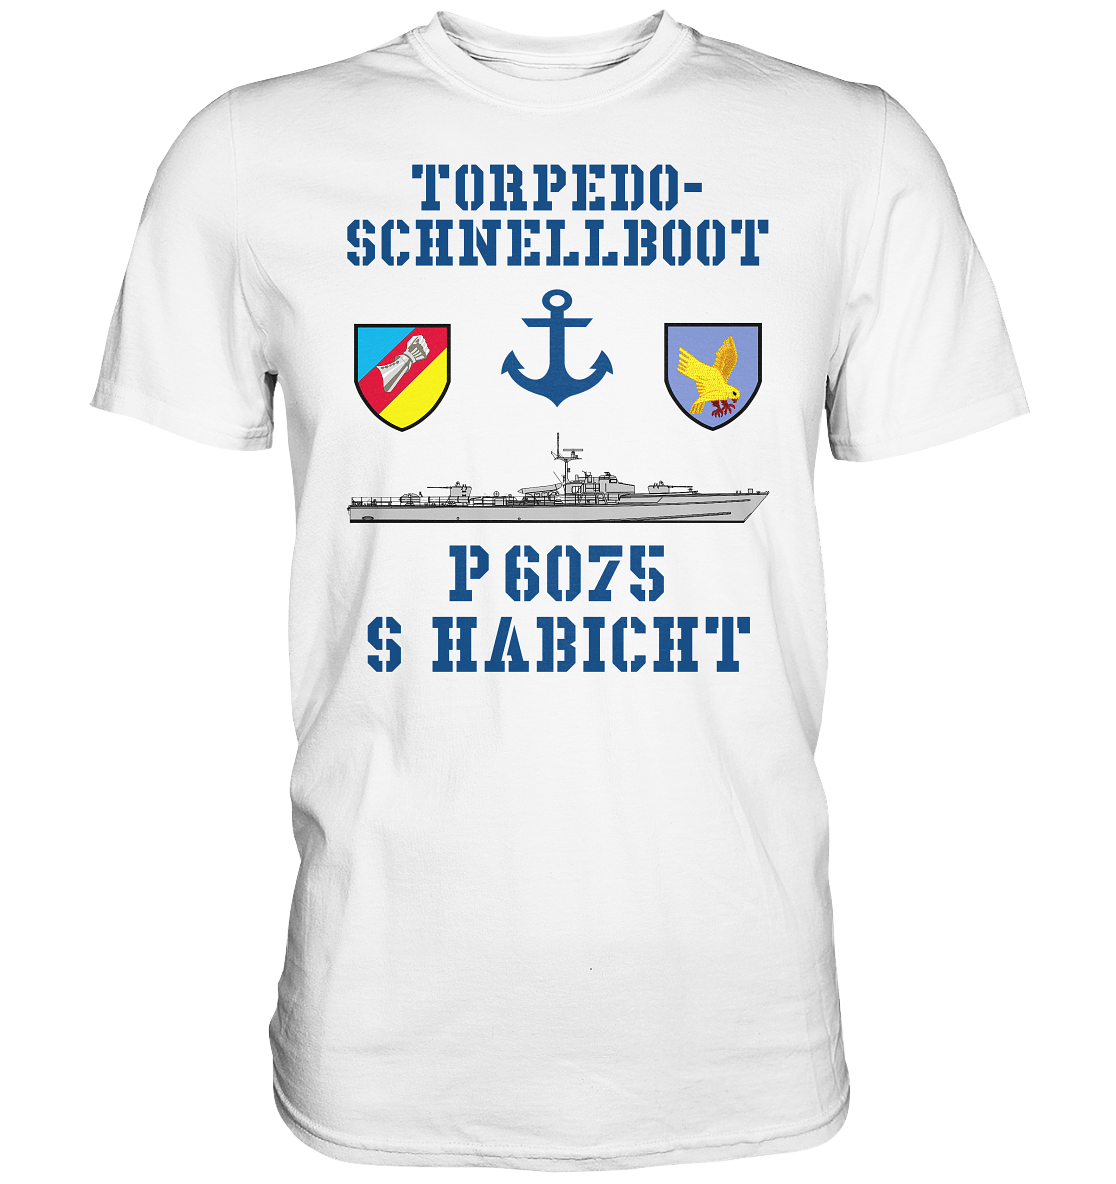 Torpedo-Schnellboot P6075 HABICHT Anker - Premium Shirt